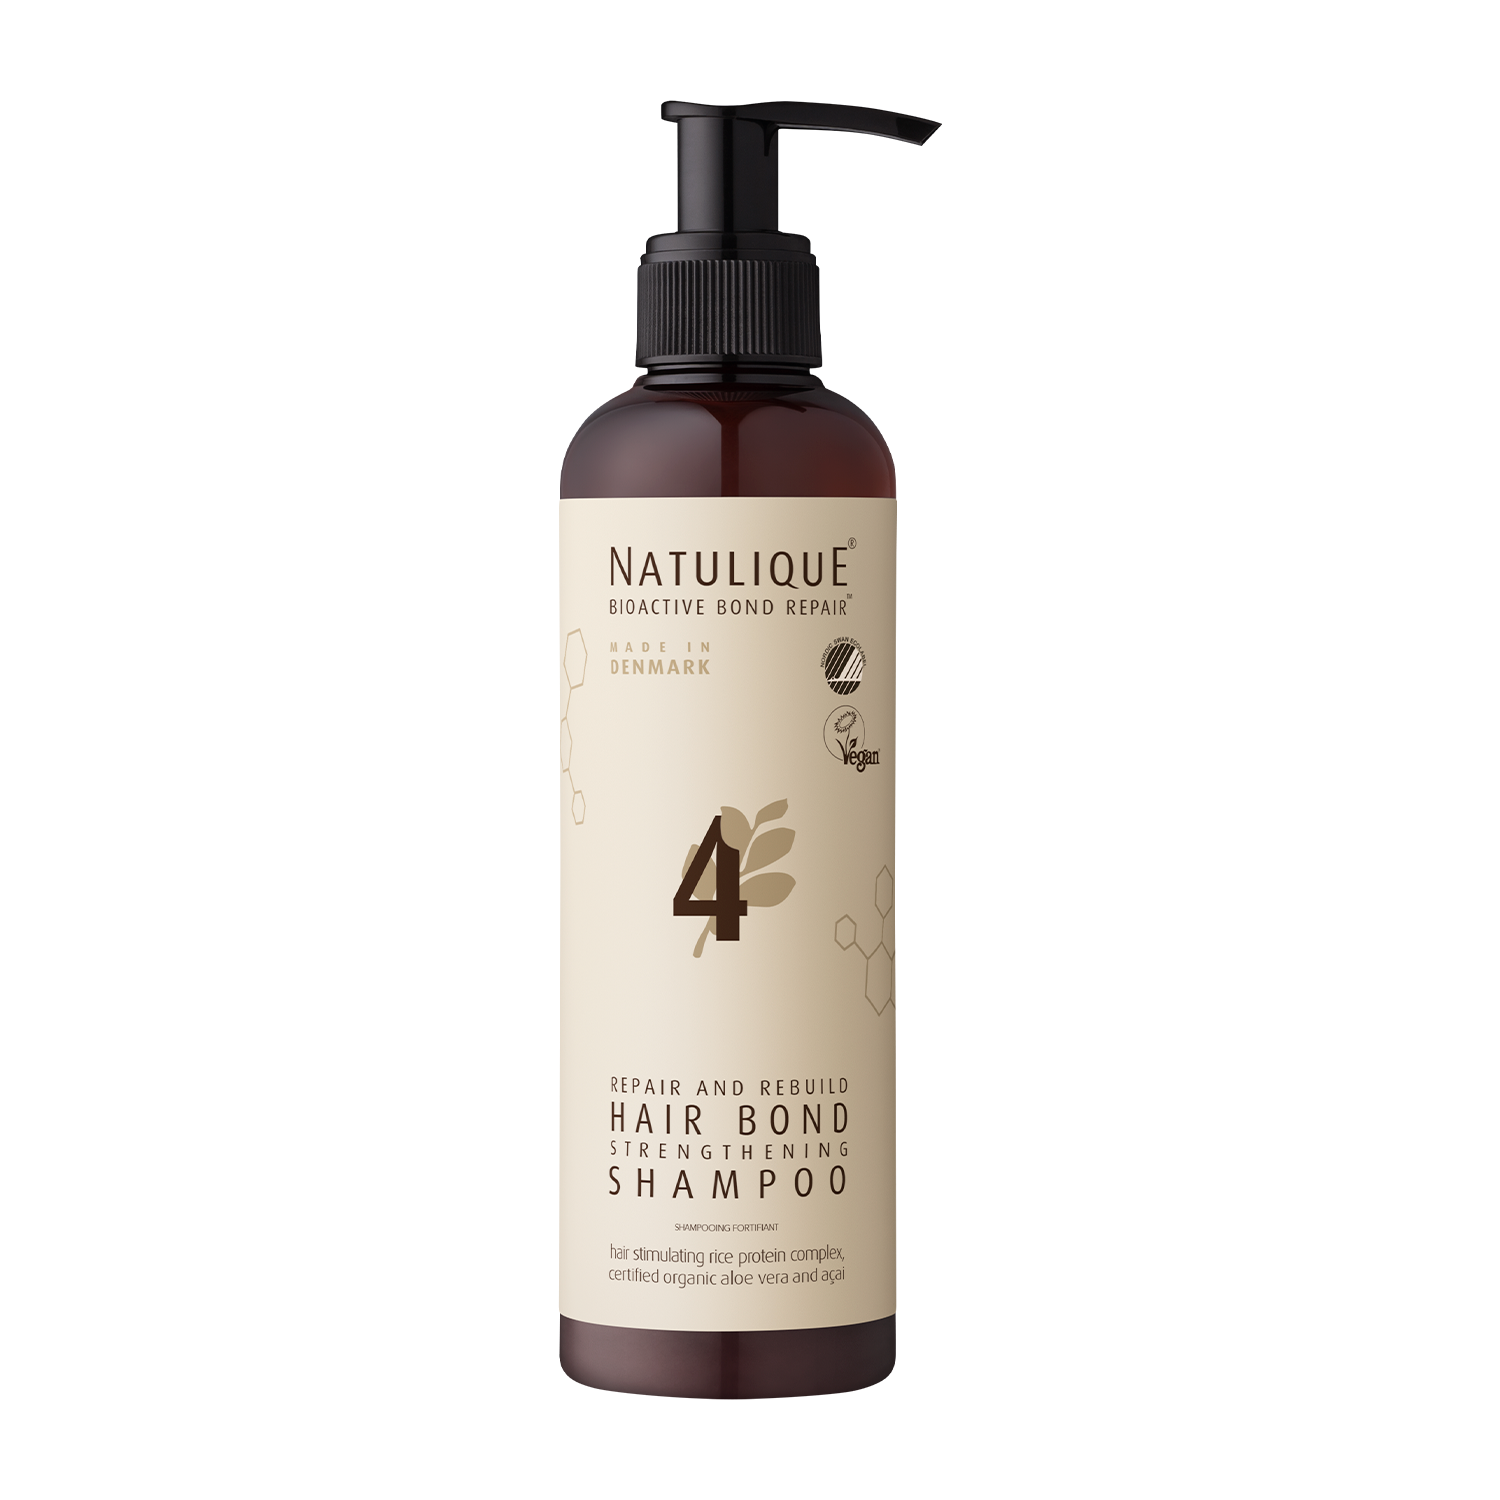 Natulique Hair Bond Shampoo